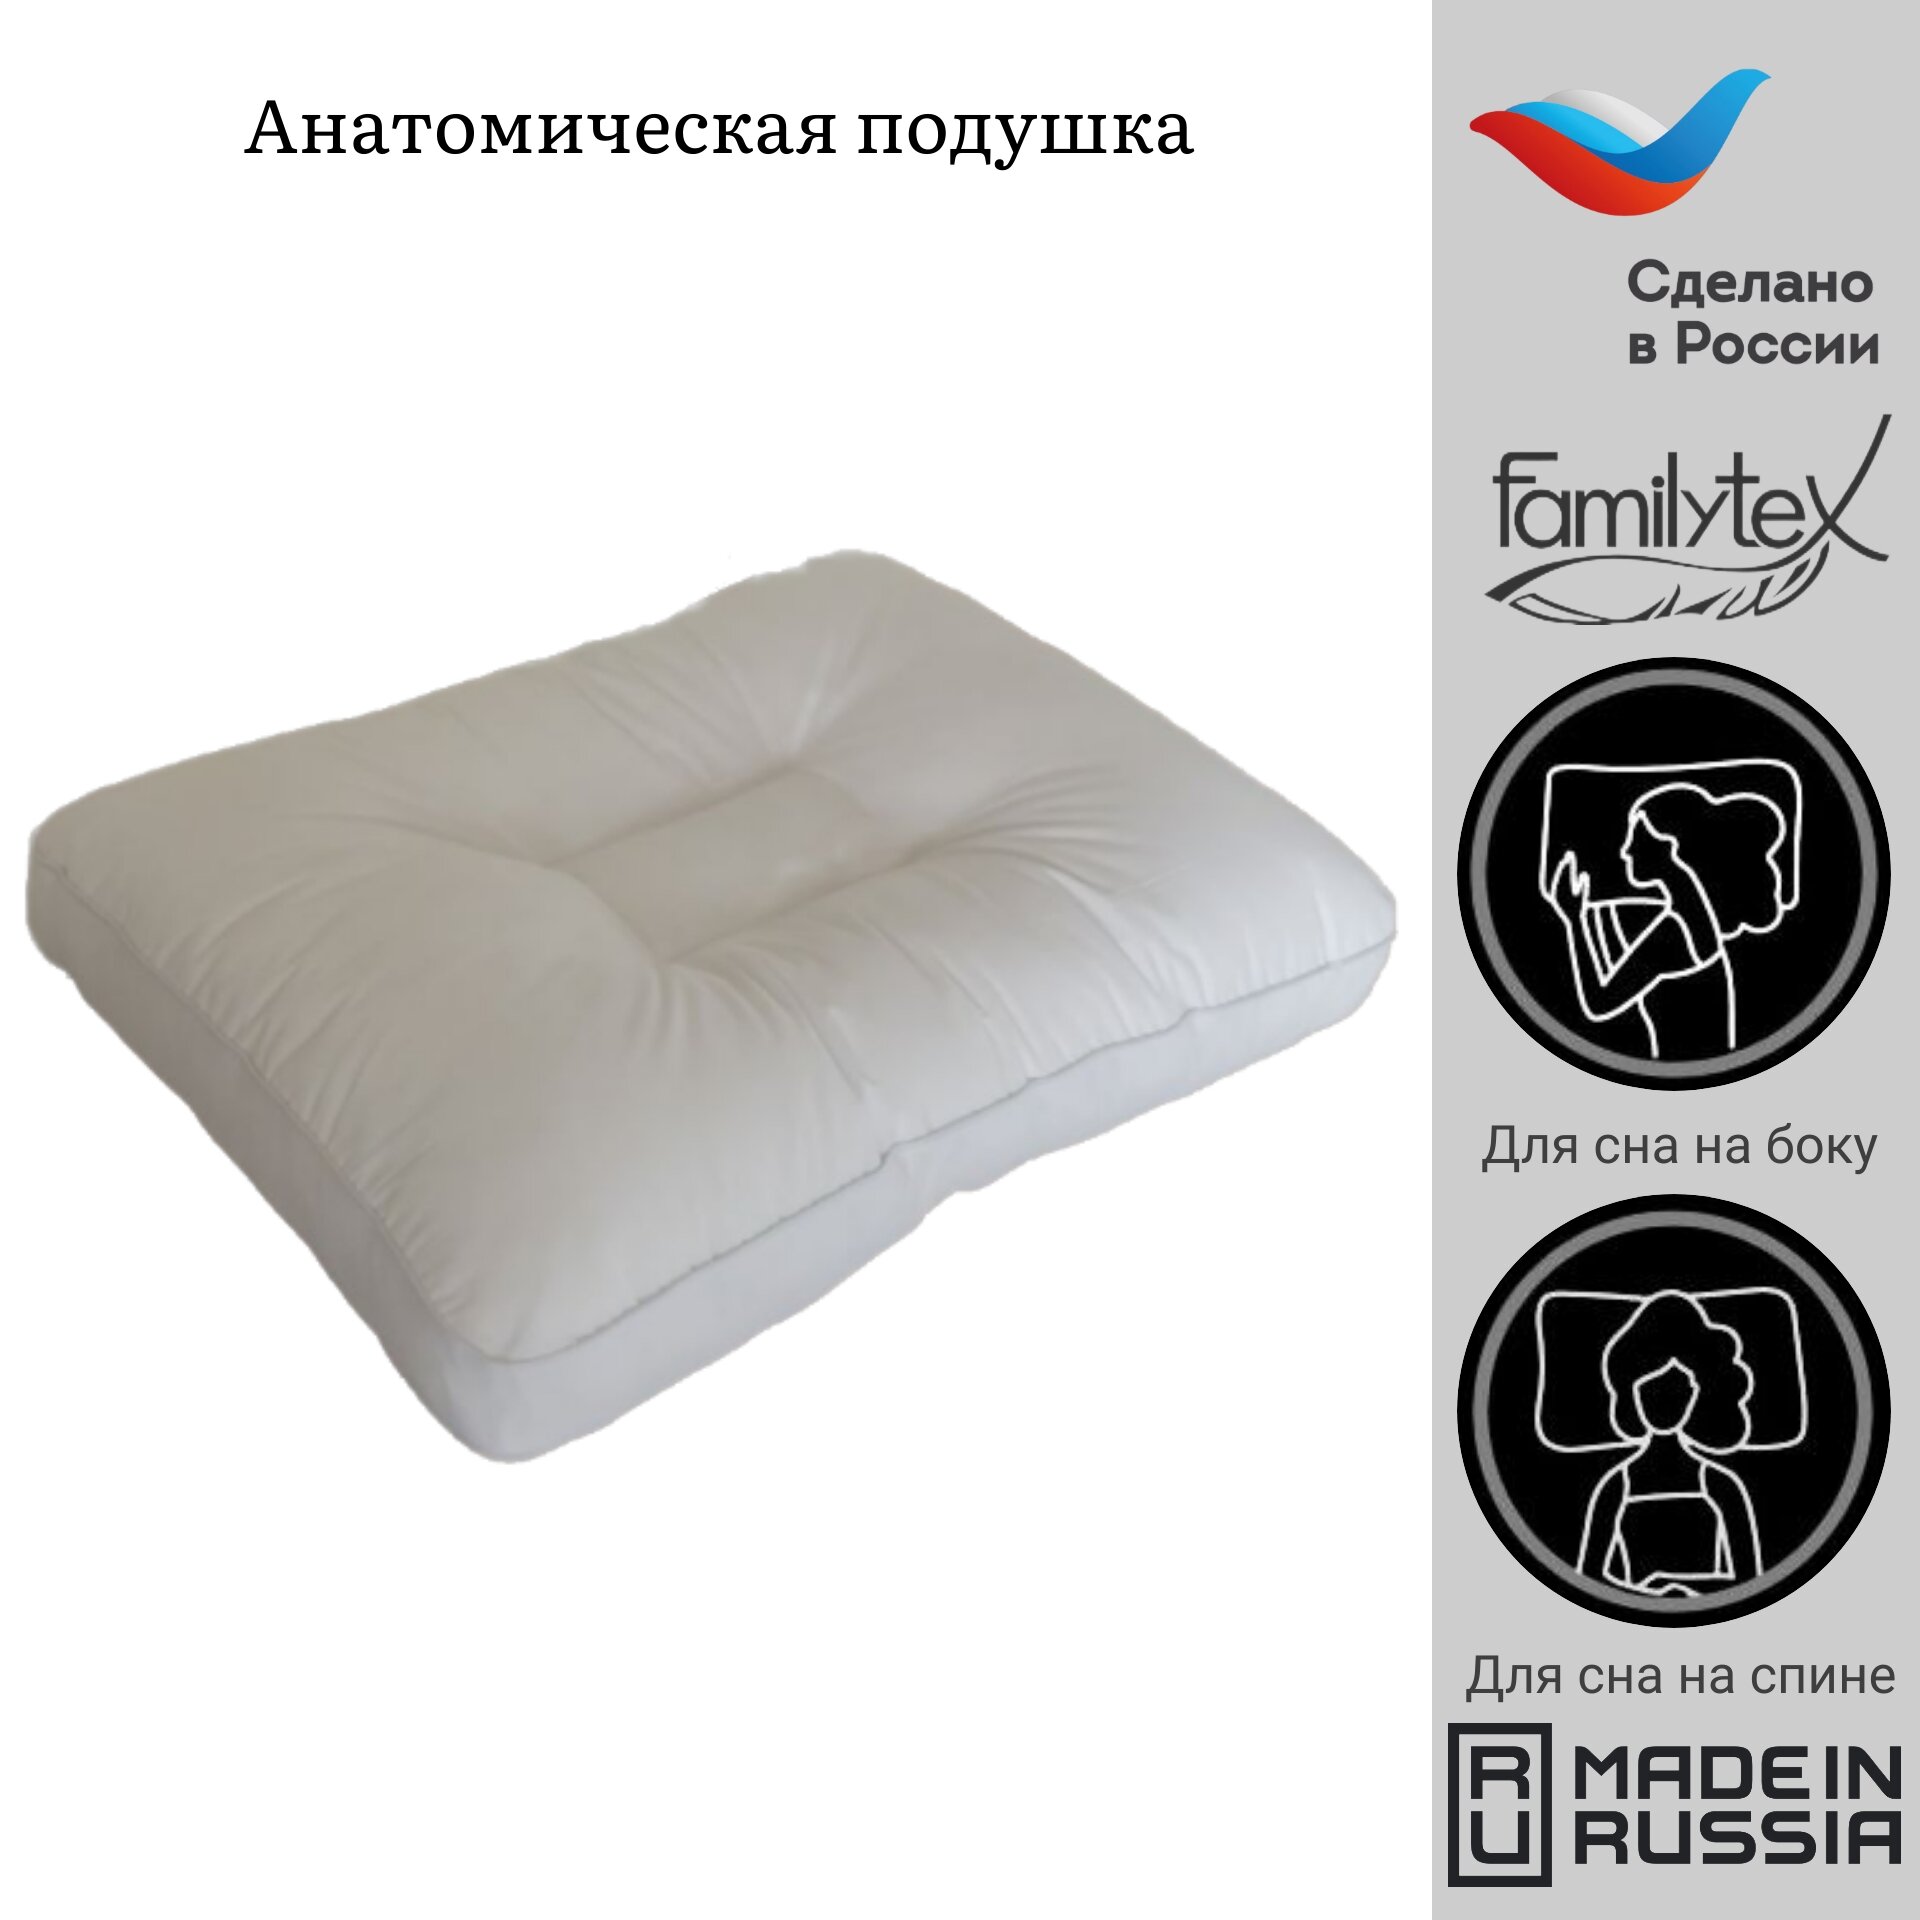 Анатомическая подушка для сна "Familytex" 45x65см, высота 13см, артикул ПСС6(45х65)С